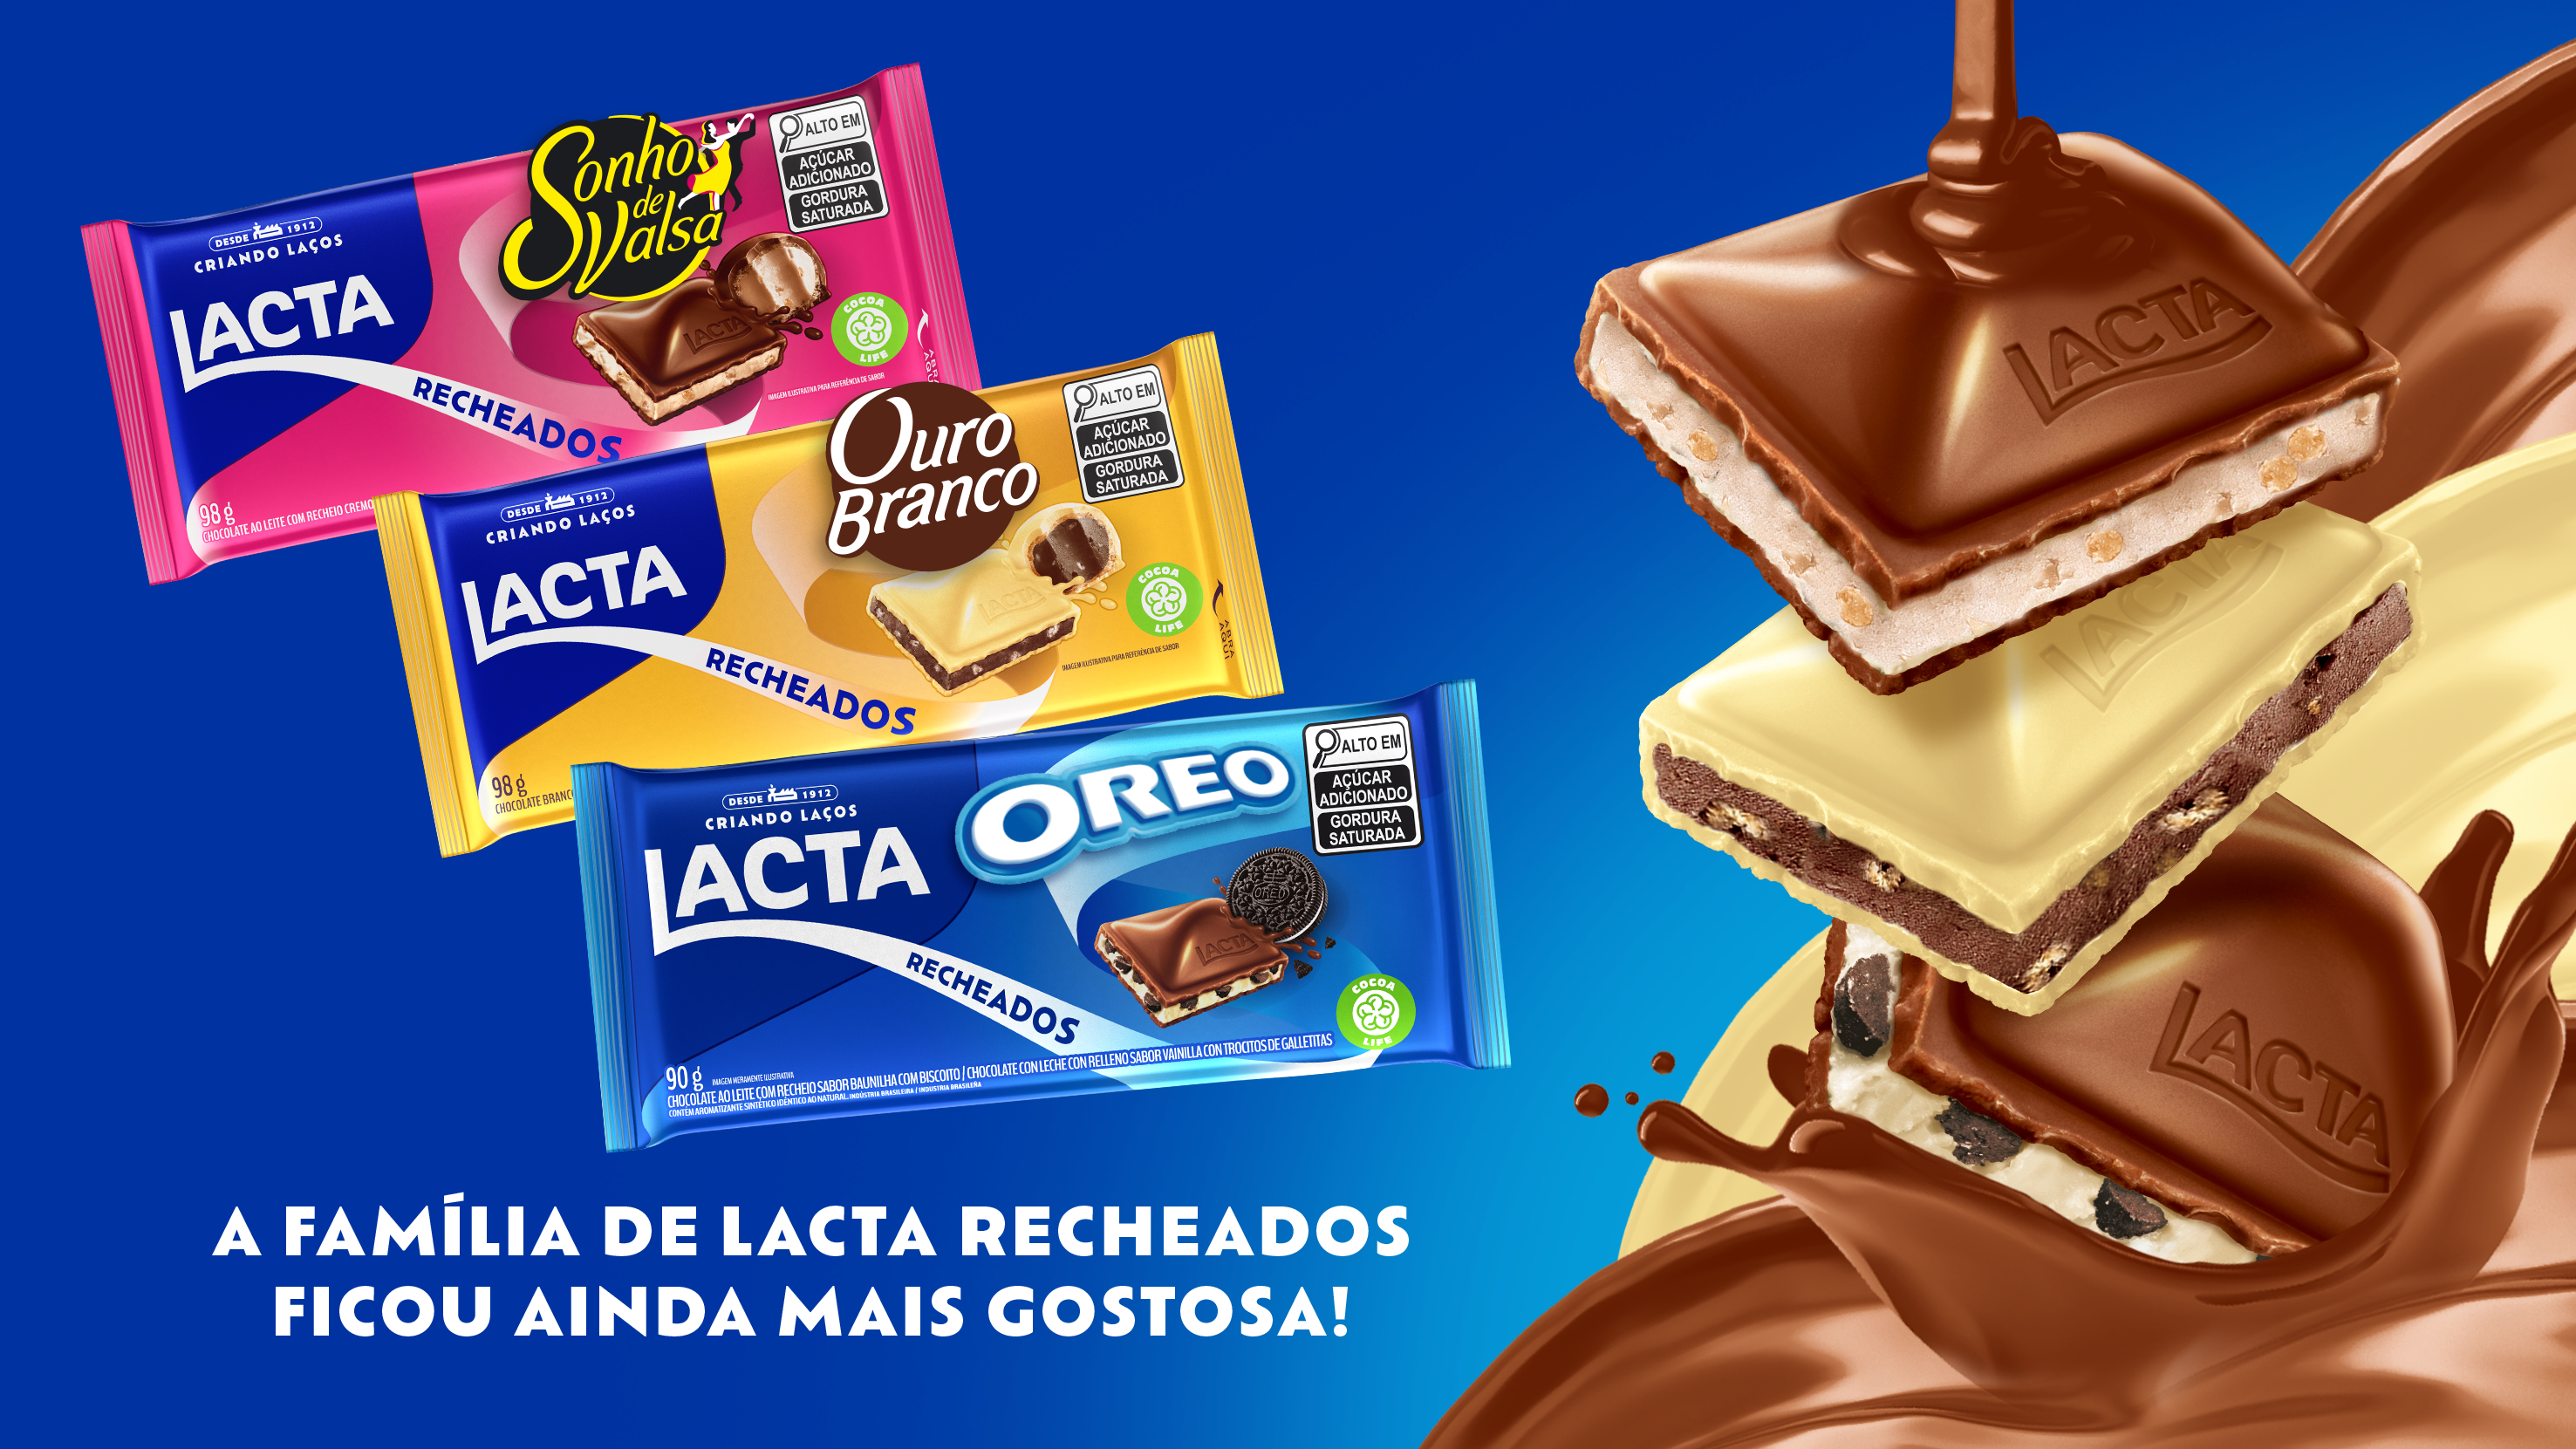 Lacta expande portfólio e surpreende com o lançamento de barras de chocolate  Sonho de Valsa e Ouro Branco - ABC da Comunicação